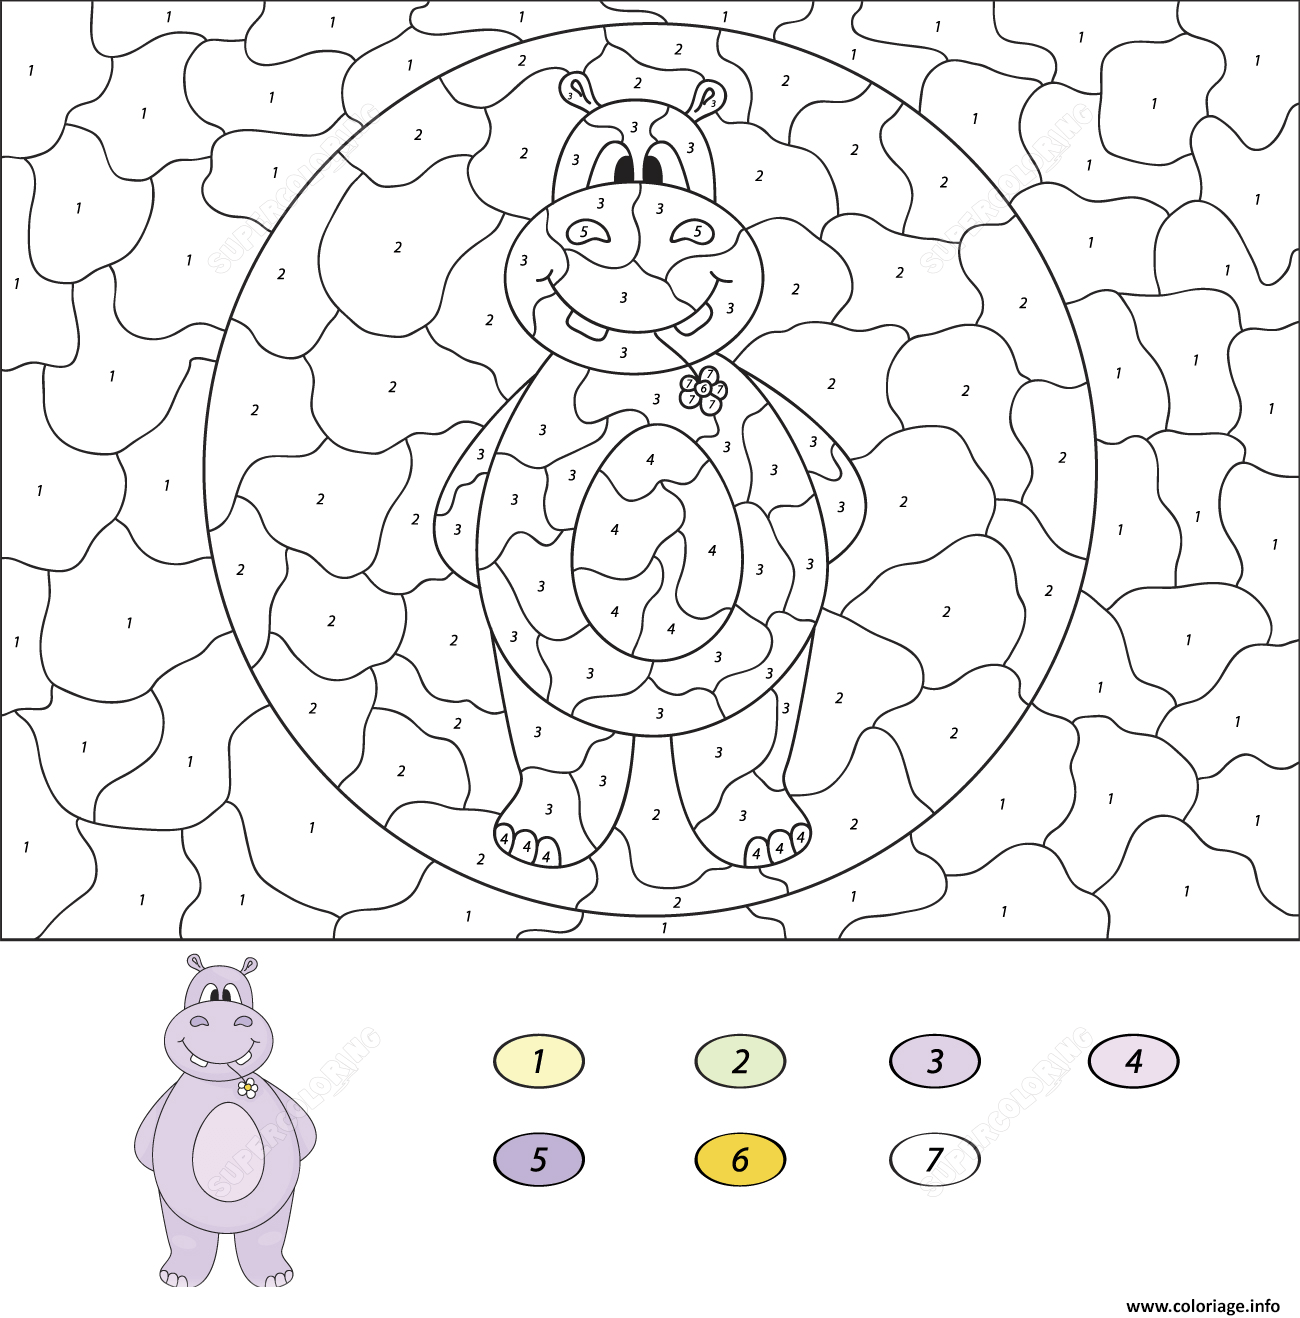 Coloriage Hippopotame Animal Par Numero Dessin à Imprimer